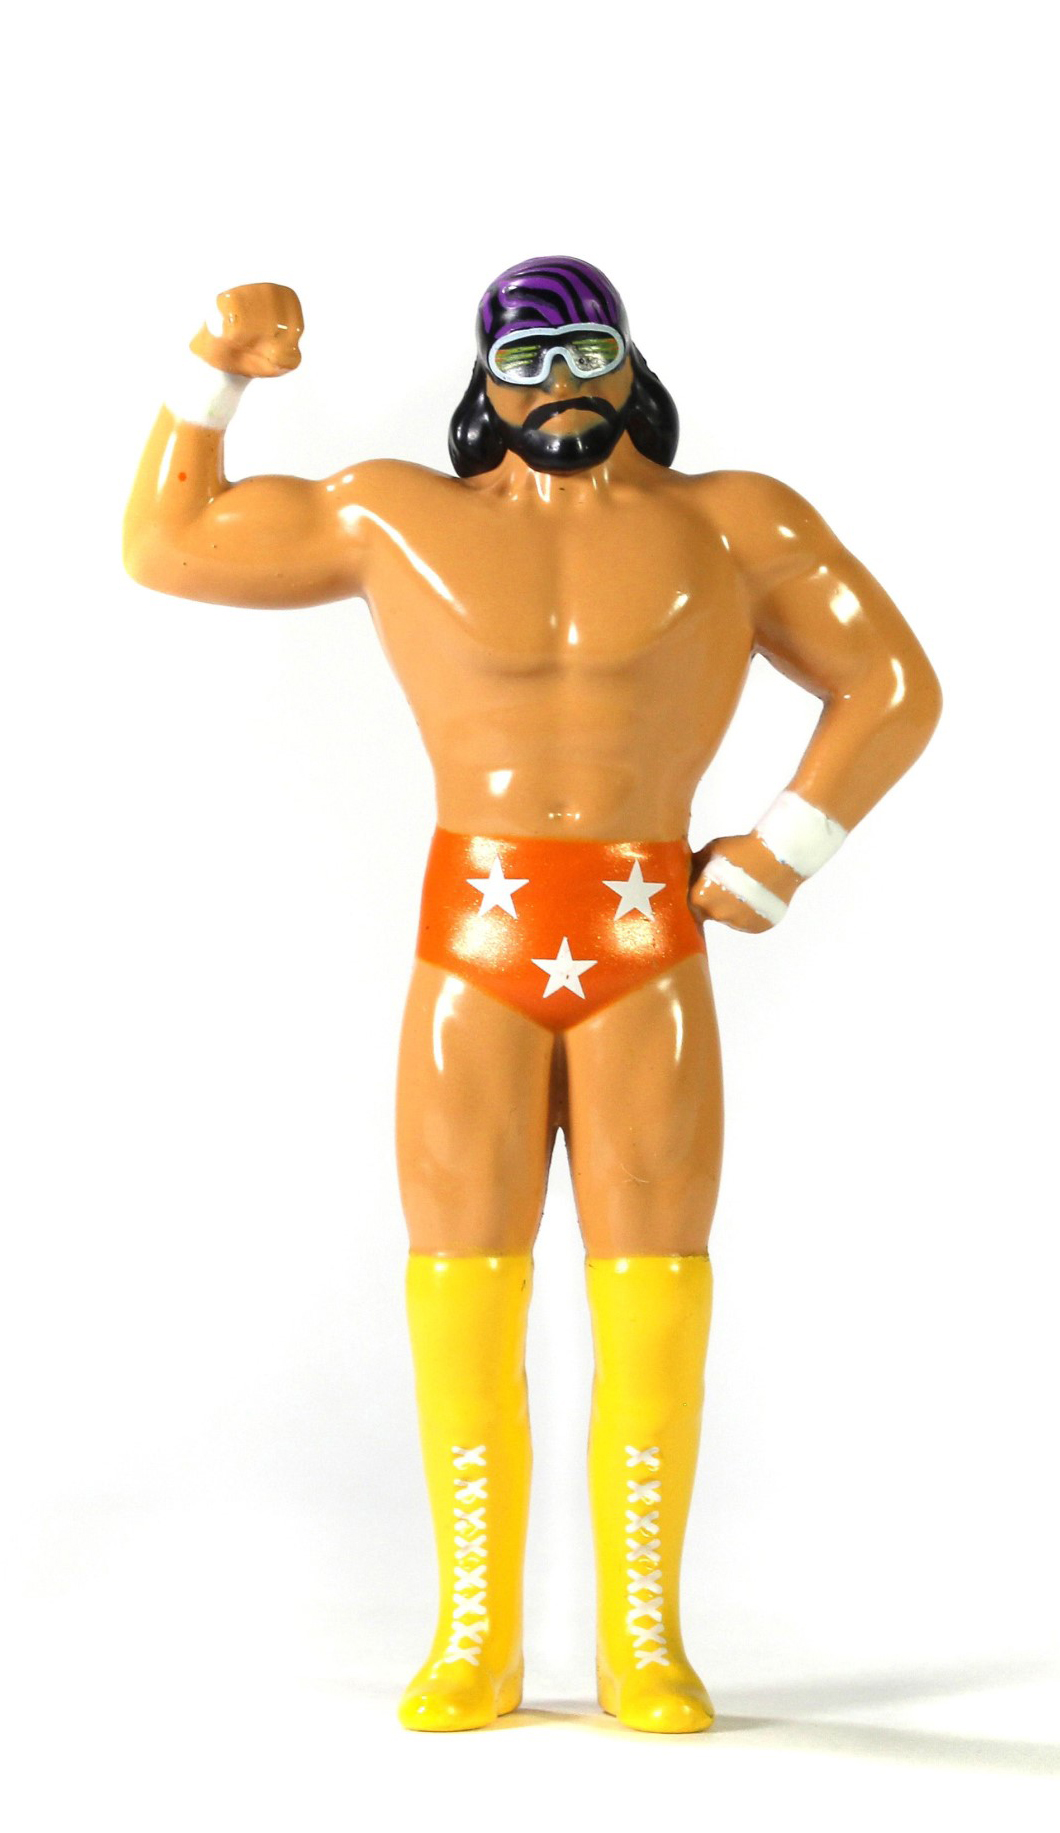 Passend zum Ford Bronco aus den 1973 er Jahren ist der US-amerikanische Wrestler "Macho Man" Randy Savage als Figur beigefgt.